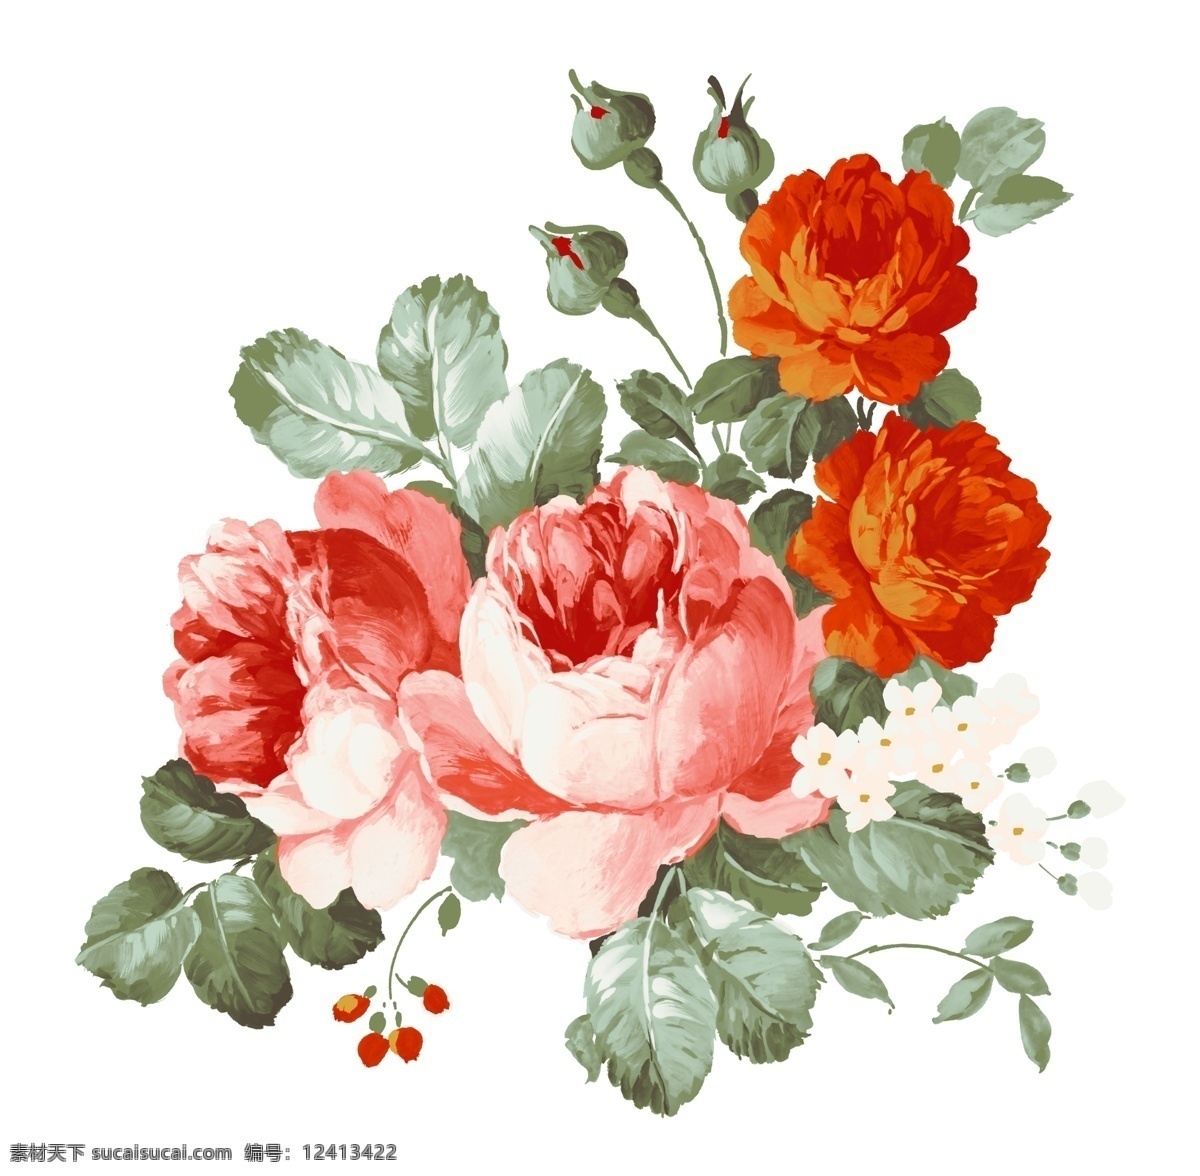 手绘红花 手绘花 手绘花朵 玫瑰 玫瑰花 红玫瑰 搪瓷花朵 陶瓷花 花纸 设计素材 手绘玫瑰 花草共享 底纹边框 花边花纹